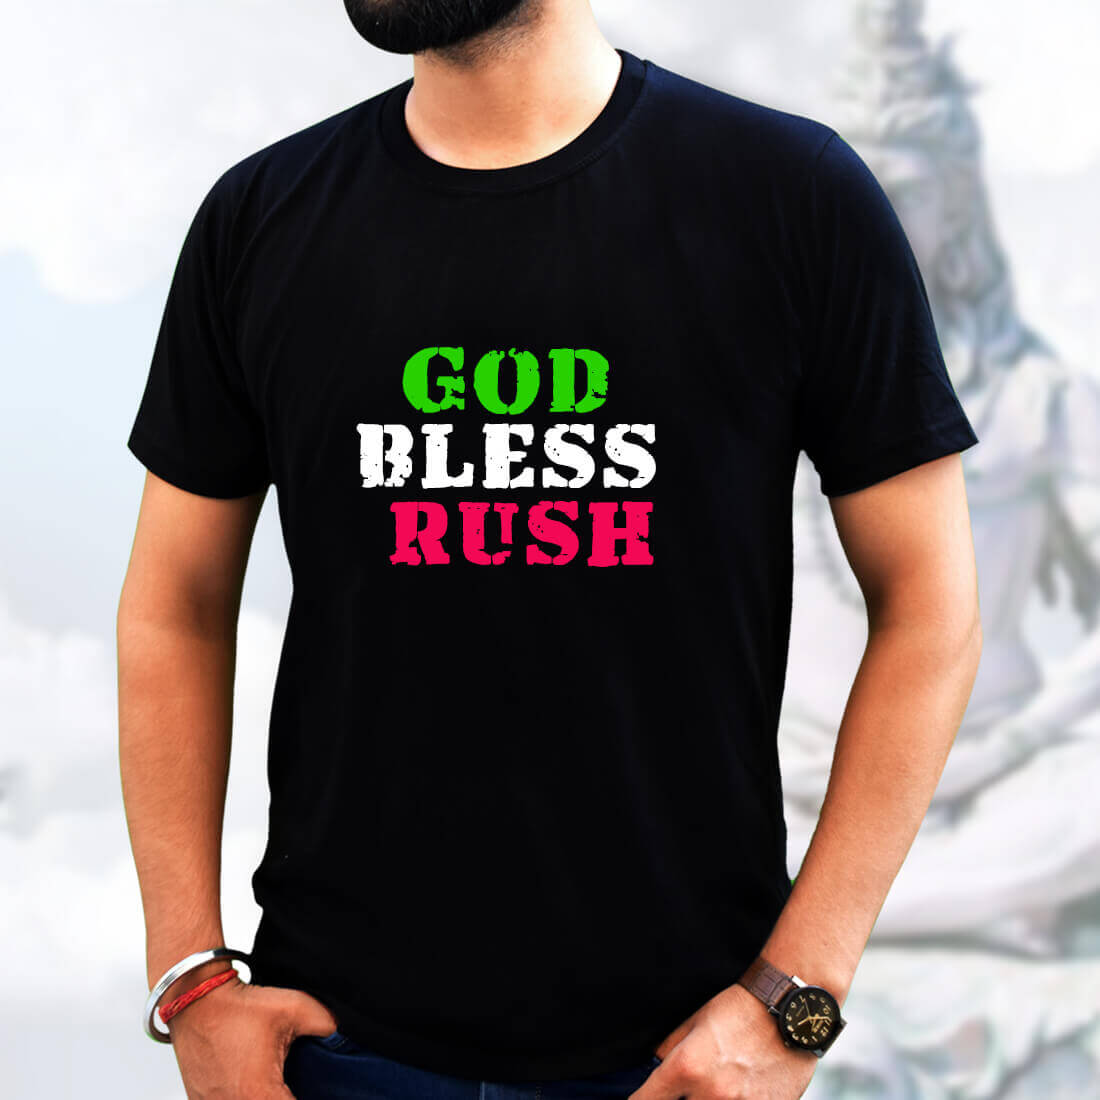 Best Wish Quote Round Shape Neck T-Shirt Black